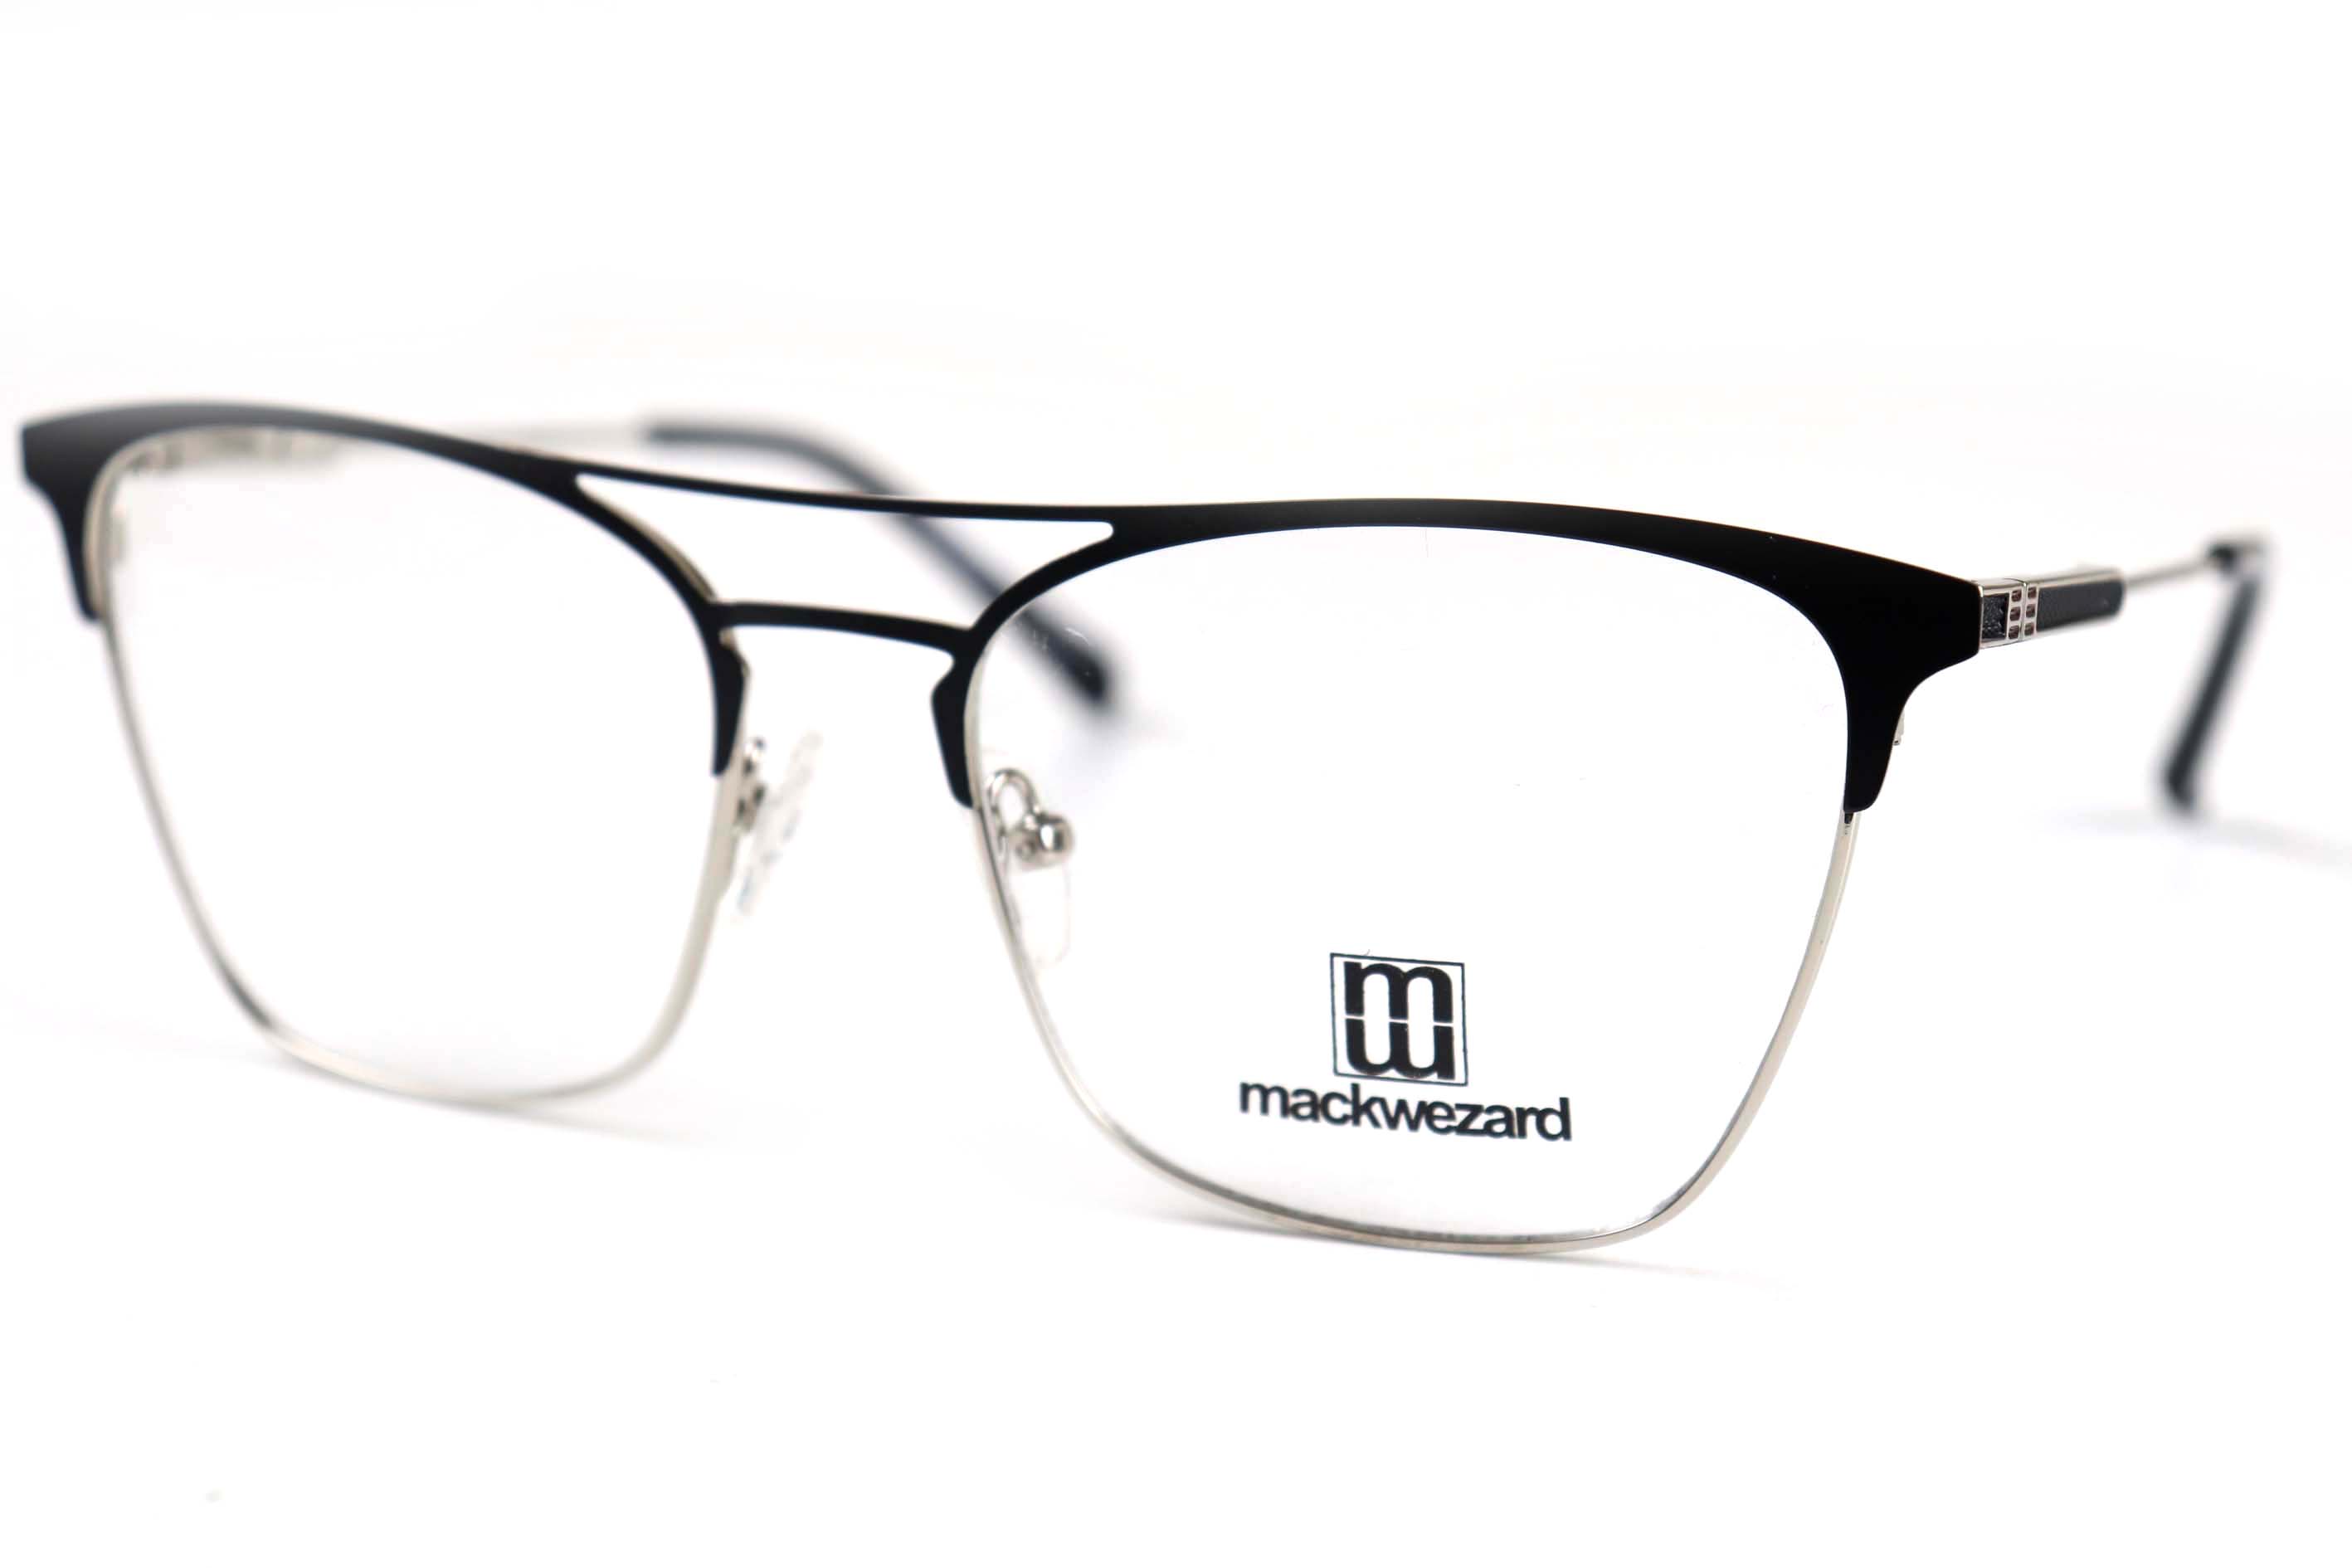 Mackwezard Eyeglasses- 1001-C5-54-18-140